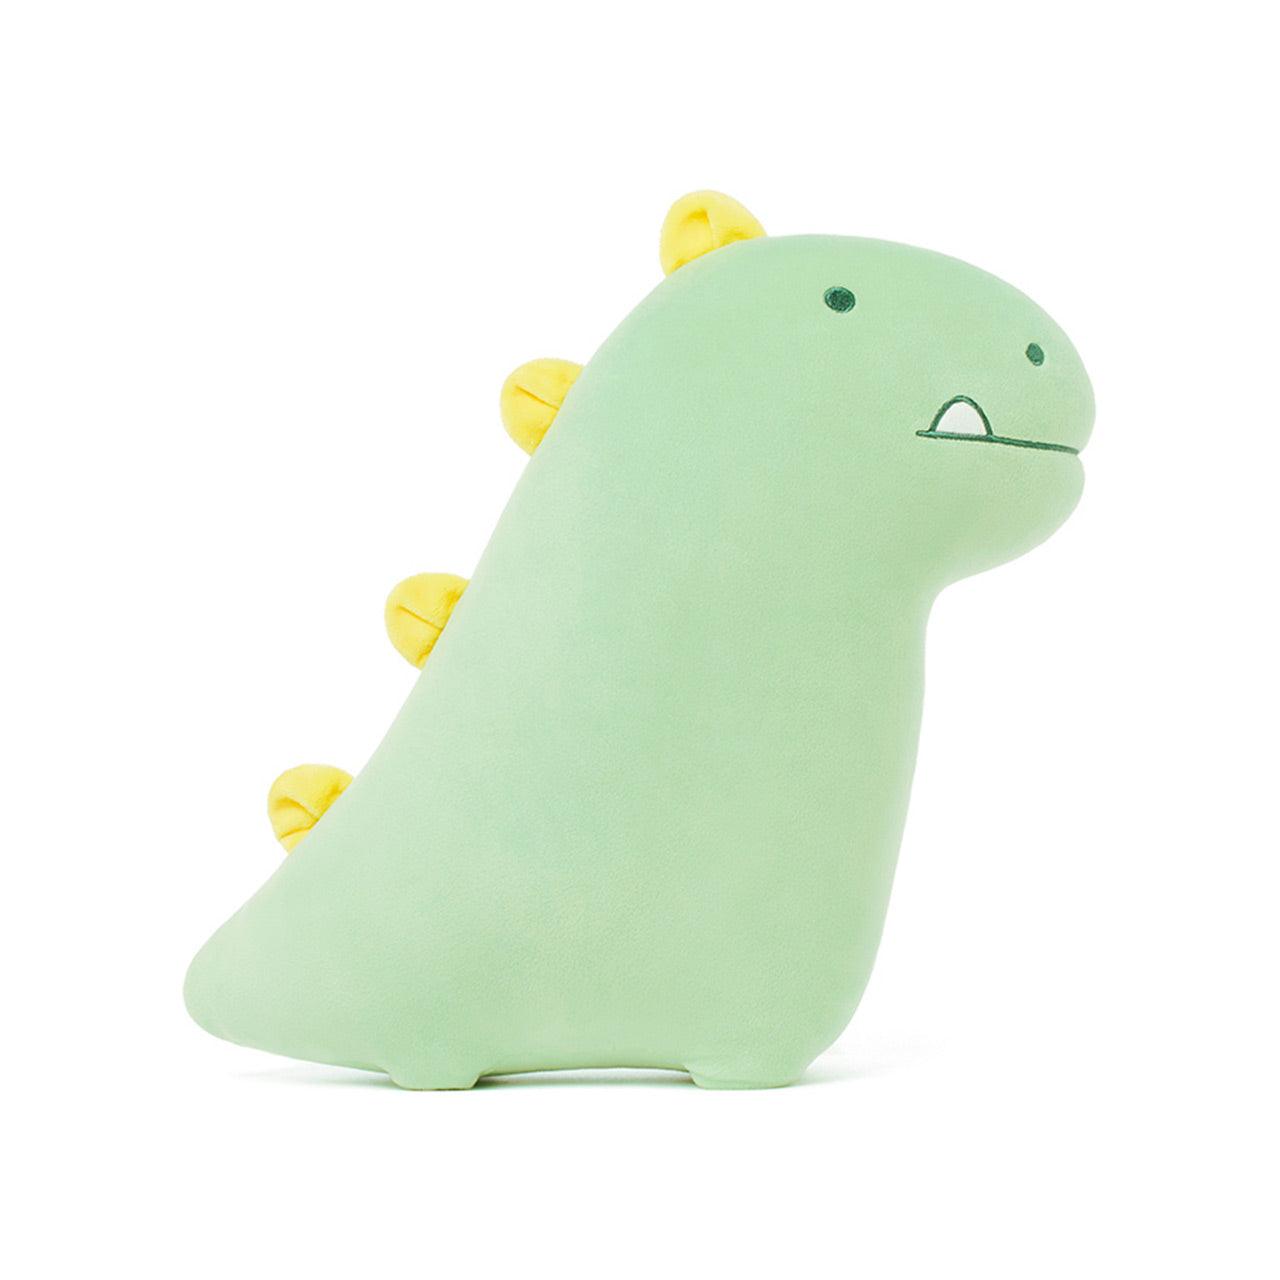 Kakao Friends Jordy Dinosaur Jordy Soft Plush Toy 恐龍抱枕 - SOUL SIMPLE HK